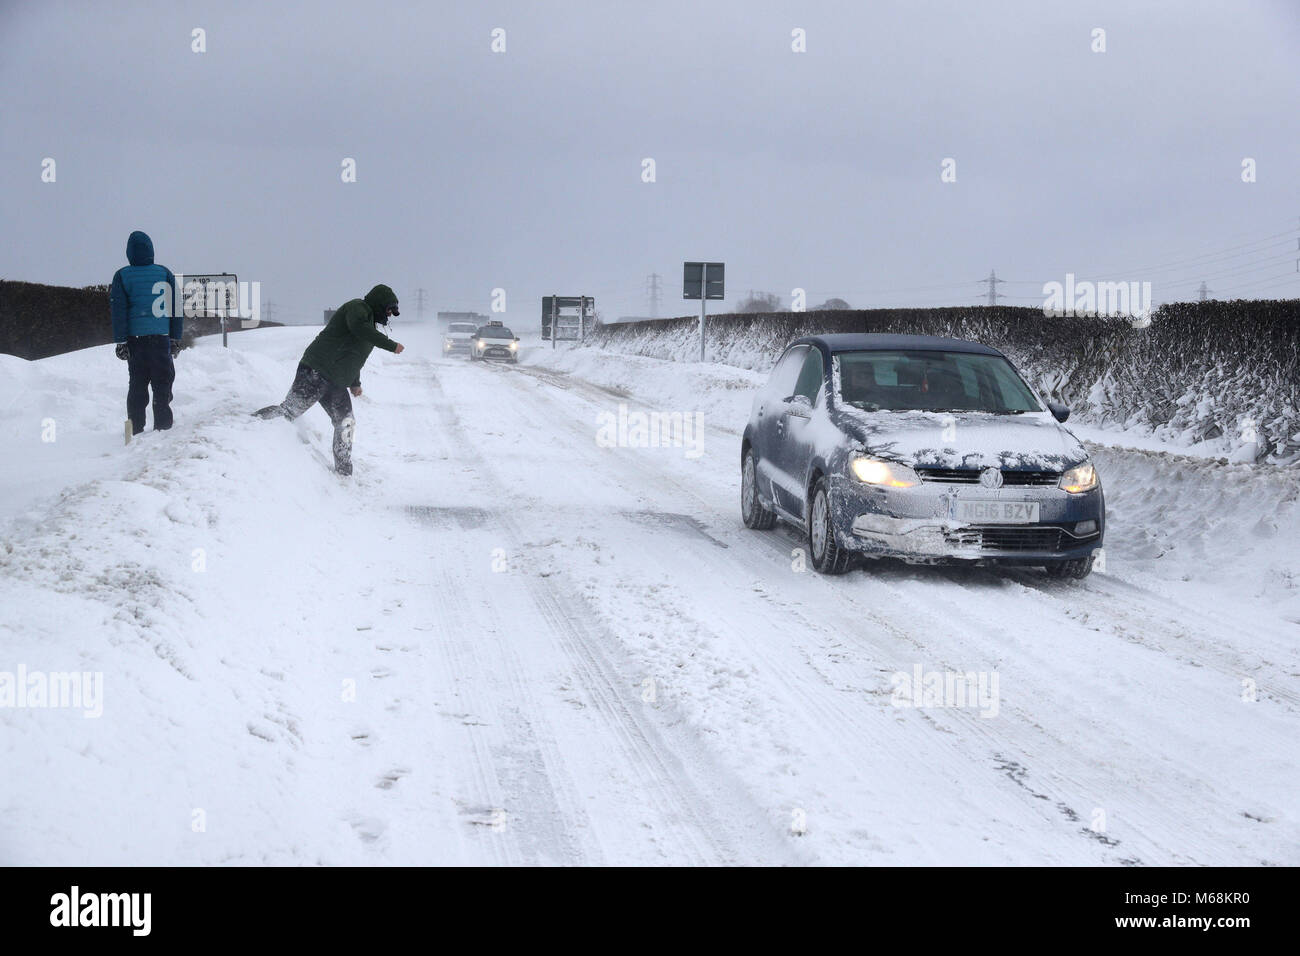 Les gens jettent boules de neige sur les véhicules qui circulent sur l'A192 près de Seaton Delaval, que storm Emma, roulant en provenance de l'Atlantique, semble prêt à affronter la bête de l'est fait froid la Russie - de l'air généralisée à l'origine de nouvelles chutes de neige et températures amer. Banque D'Images